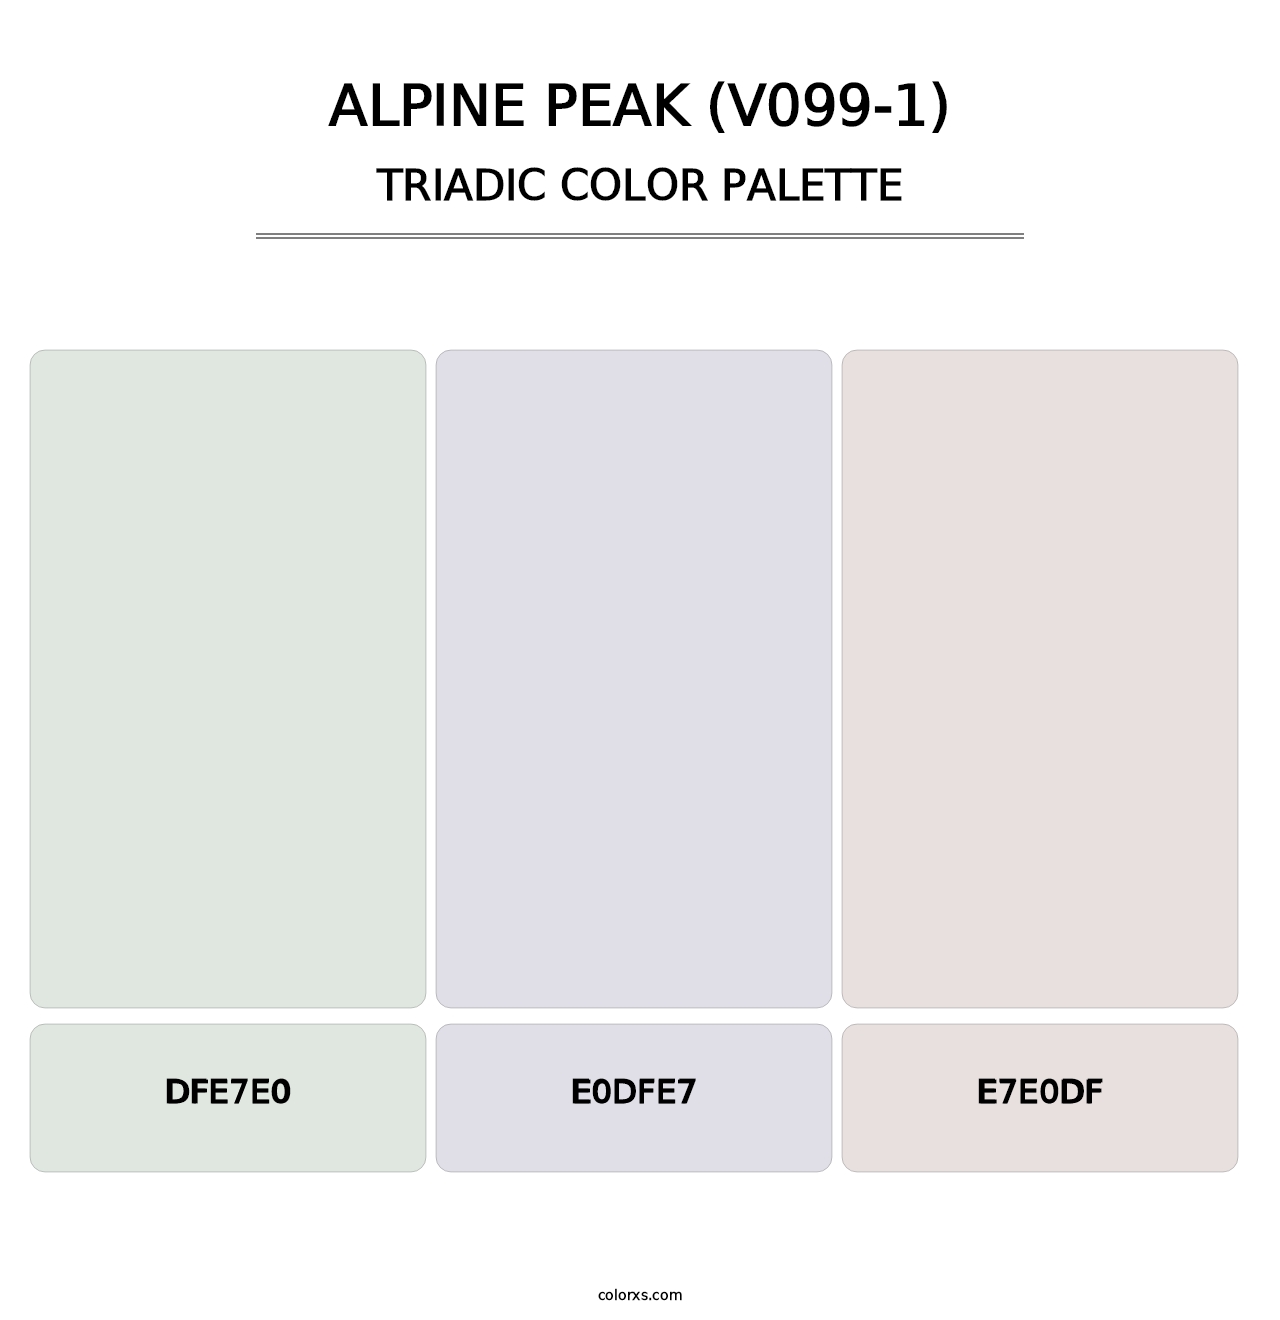 Alpine Peak (V099-1) - Triadic Color Palette